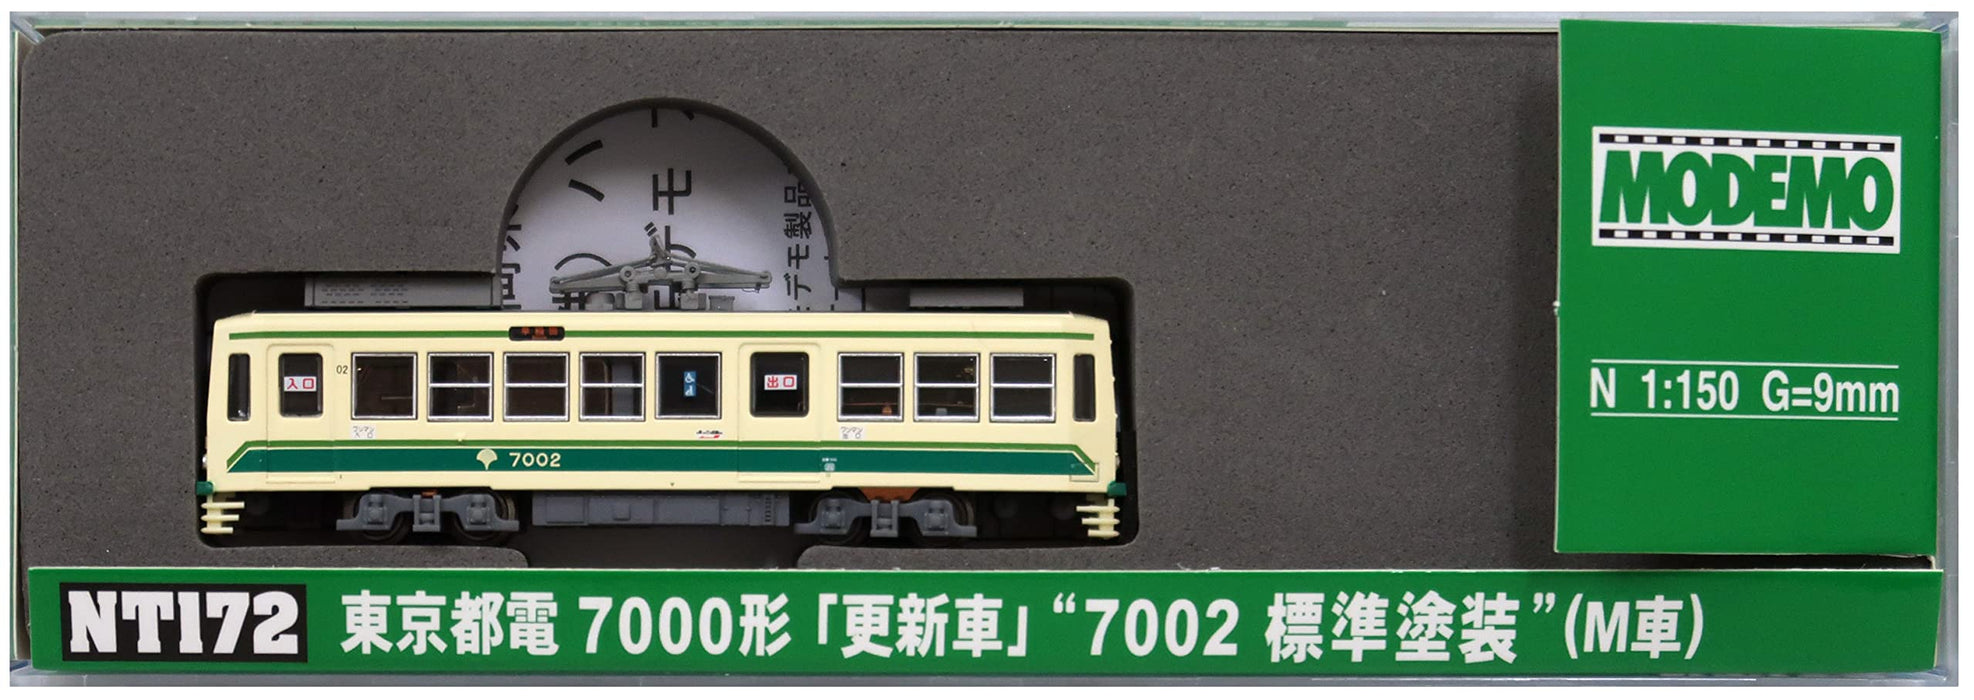 MODEMO Nt172 Tokyo Metropolitan Tram Typ 7000 Aktualisierte '7002 Standard Painting' Spur N